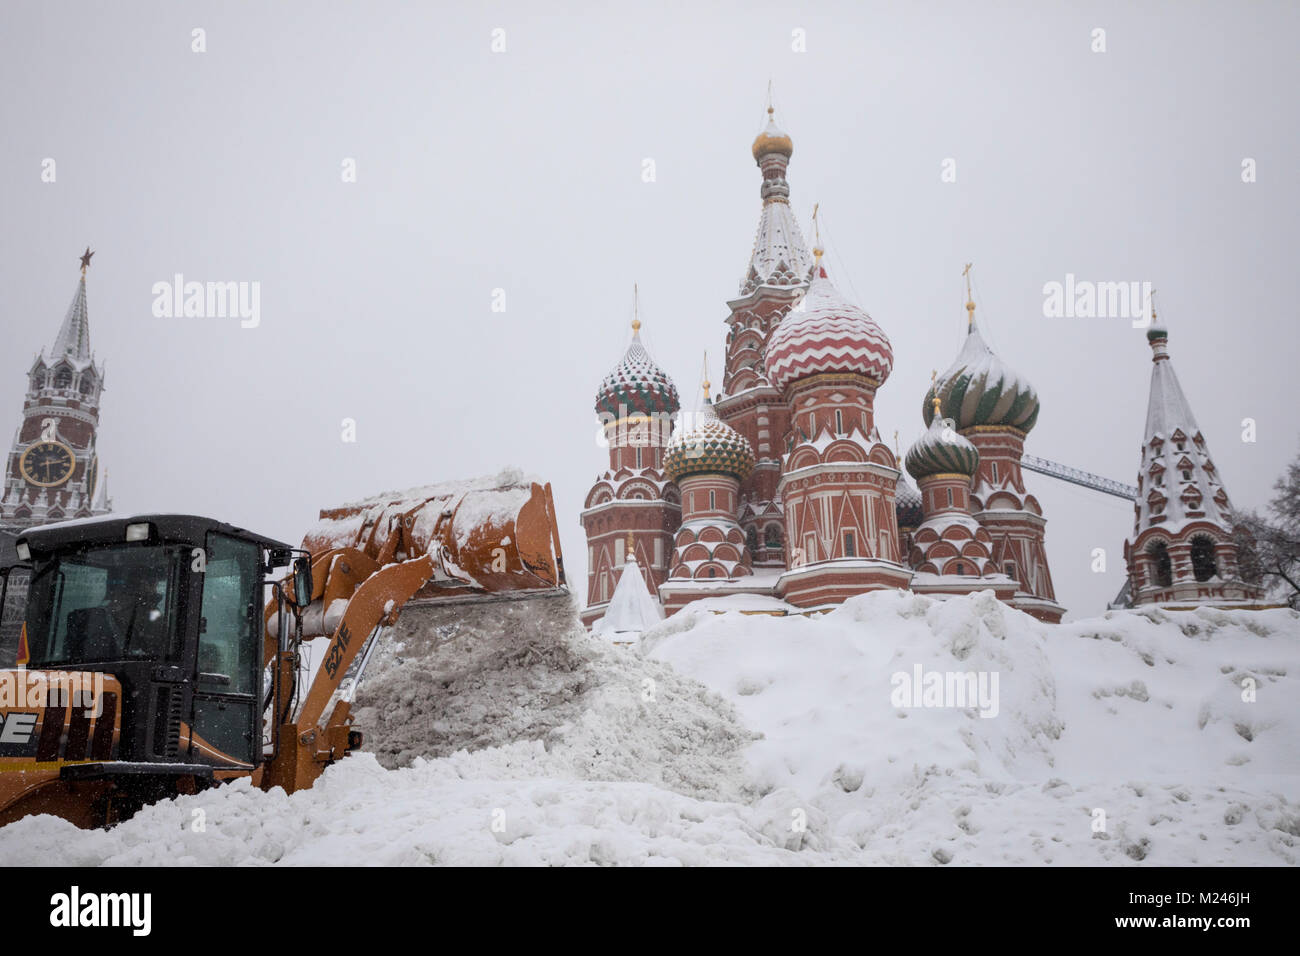 Moscou, Russie - 4 Février, 2018 : Retrait de la neige sur la place Rouge à Moscou après une importante chute de neige, la Russie Crédit : Nikolay Vinokourov/Alamy Live News Banque D'Images